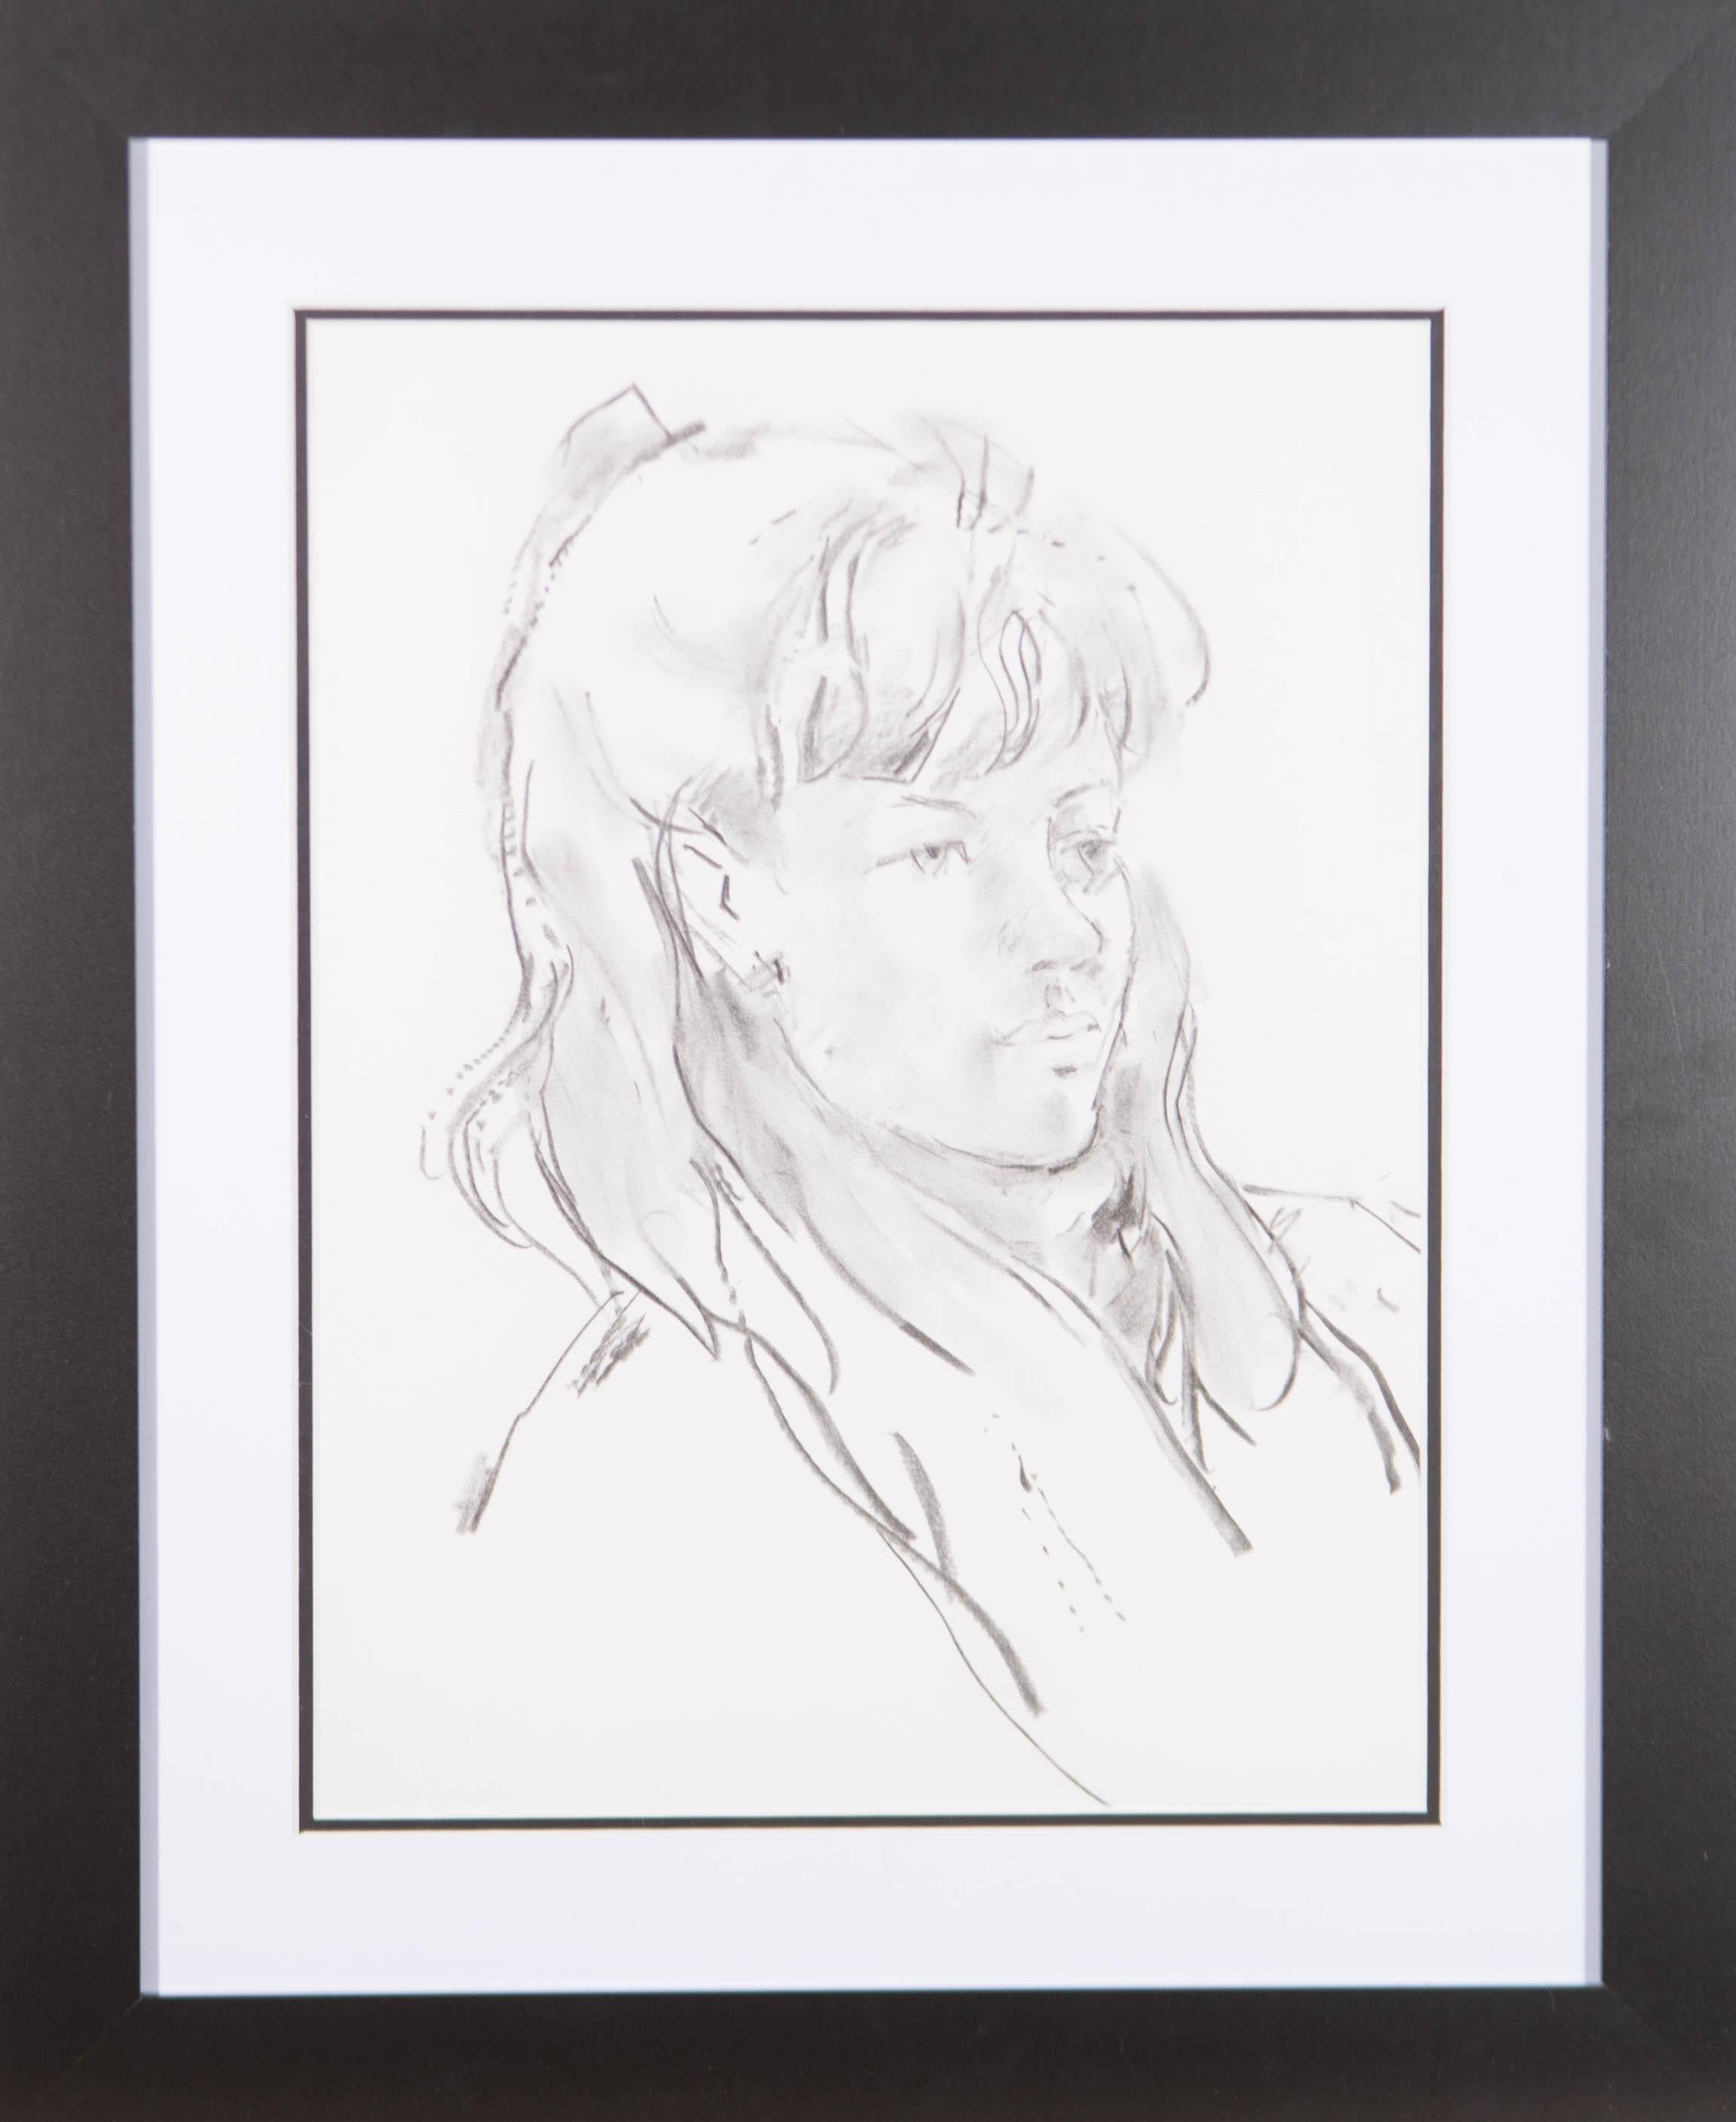 Ein wunderschönes Porträt einer jungen Frau von dem unter Denkmalschutz stehenden britischen Künstler Peter Collins. Sehr gut in einem zeitgenössischen schwarzen Rahmen mit doppeltem Passepartout präsentiert. Nicht signiert. Auf woven.